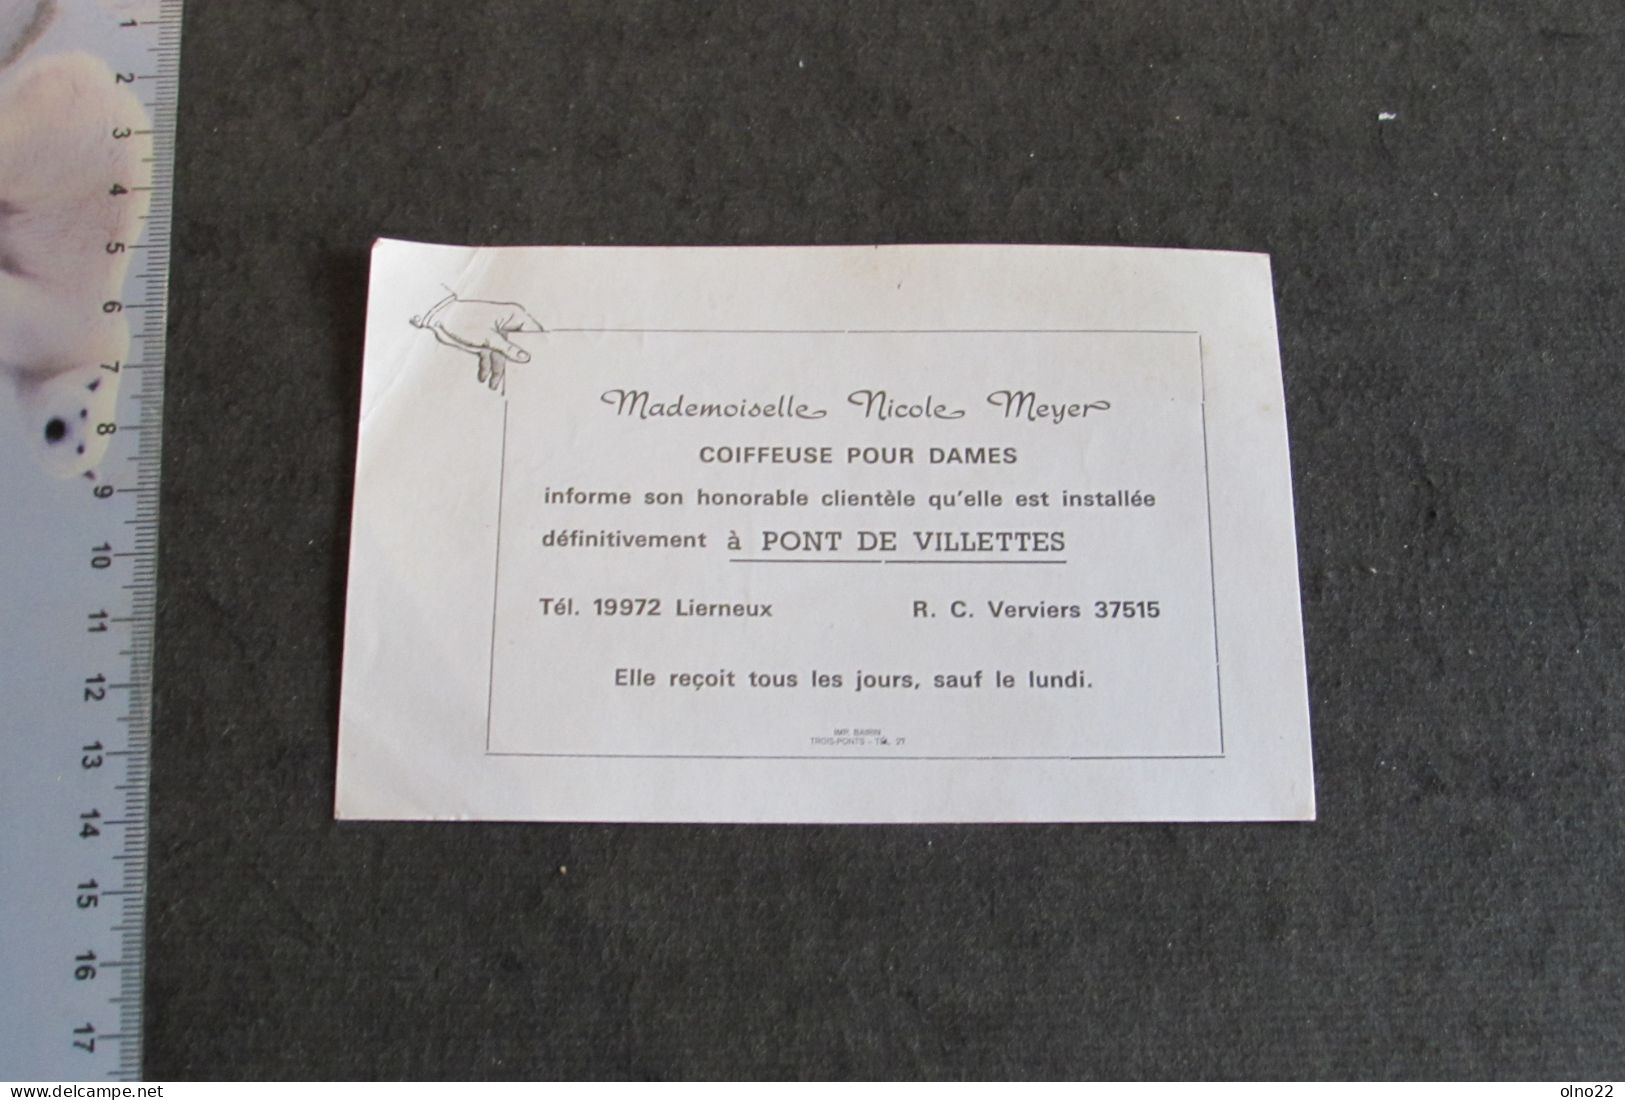 PONT DE VILLETTES - COIFEUSE DAMES NICOILE MEYER - INSTALLATION DEFINITIVE DE SON SALON DE COIFFURE - VOIR SCANS - Advertising